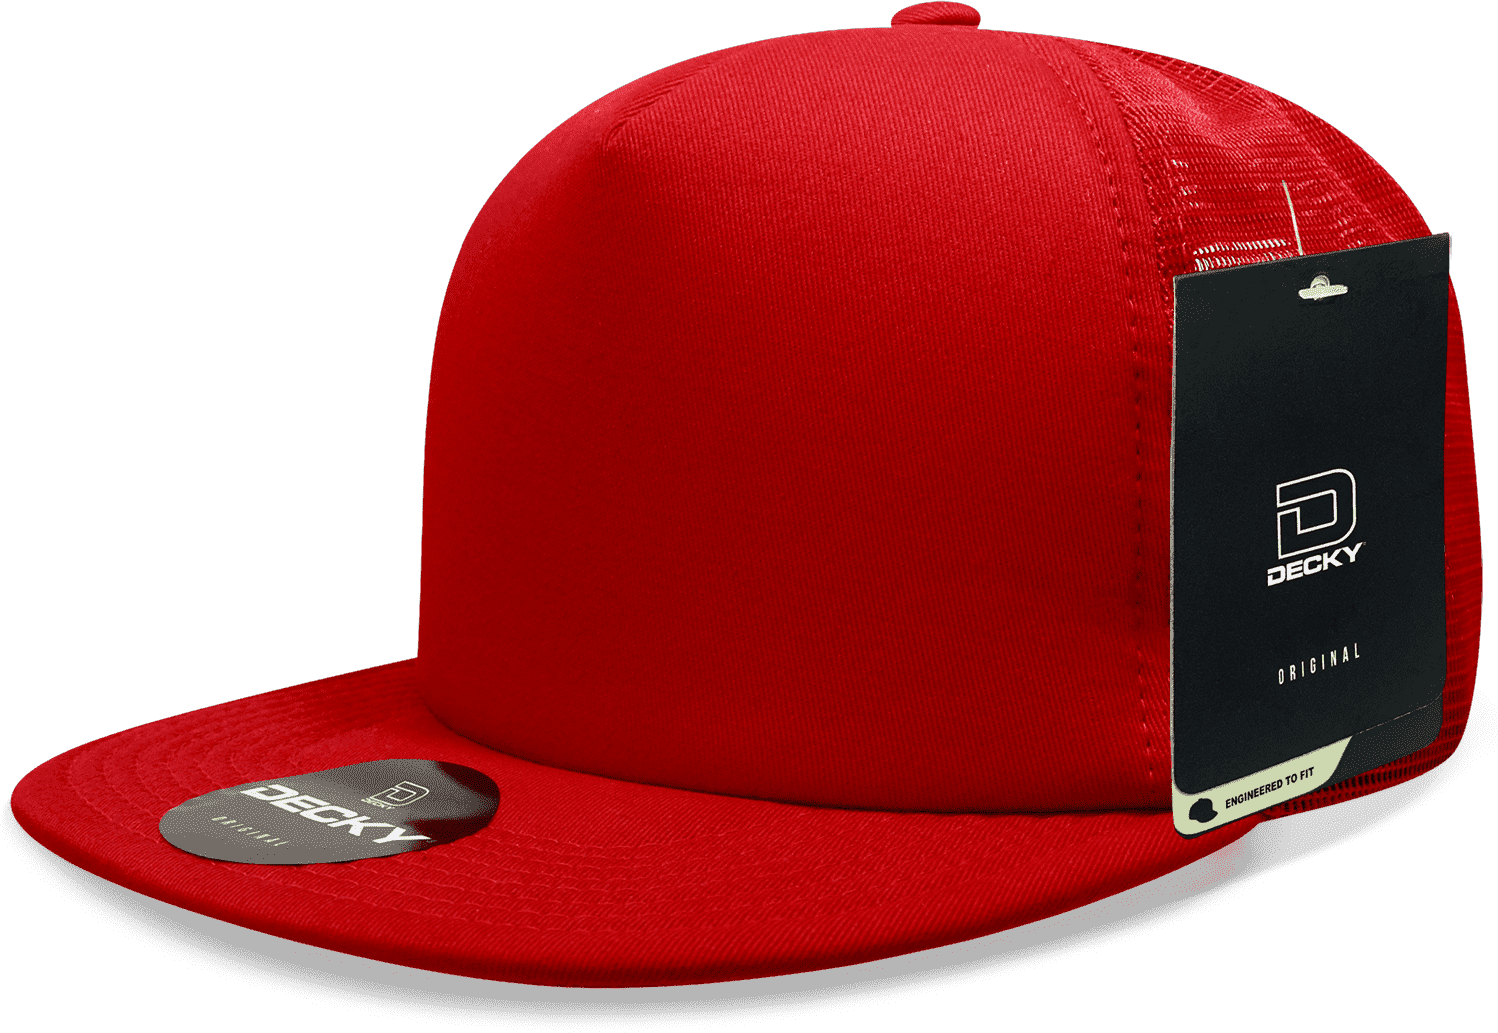 Decky 1080 Heavy Duty Foam Trucker Cap - Red Red - HIT a Double